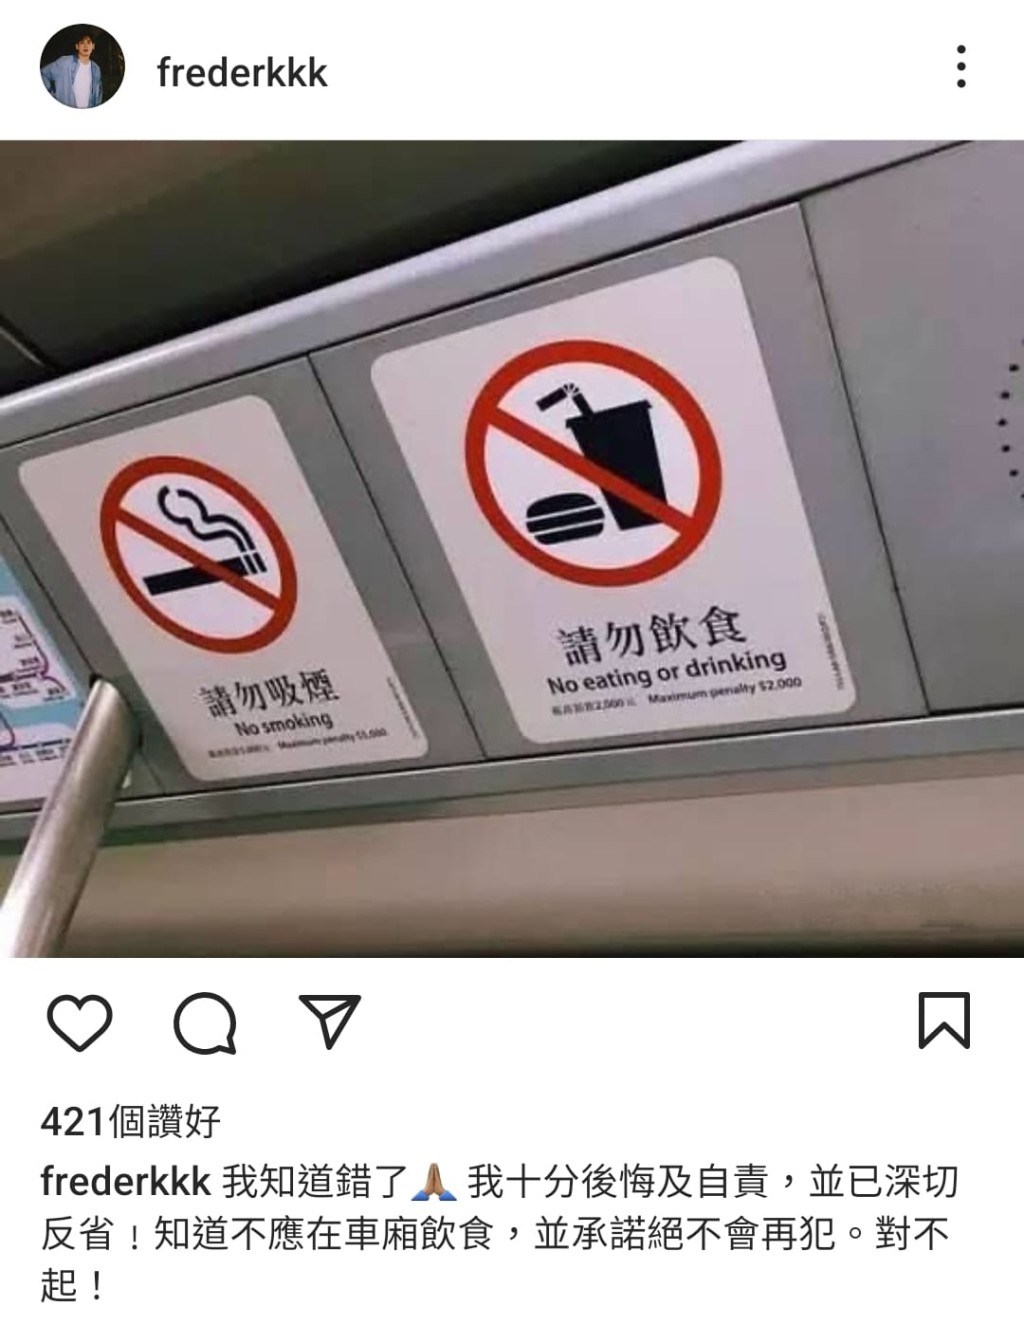 徐文浩上载港铁车厢内的「请勿饮食」标语，为偷食道歉。